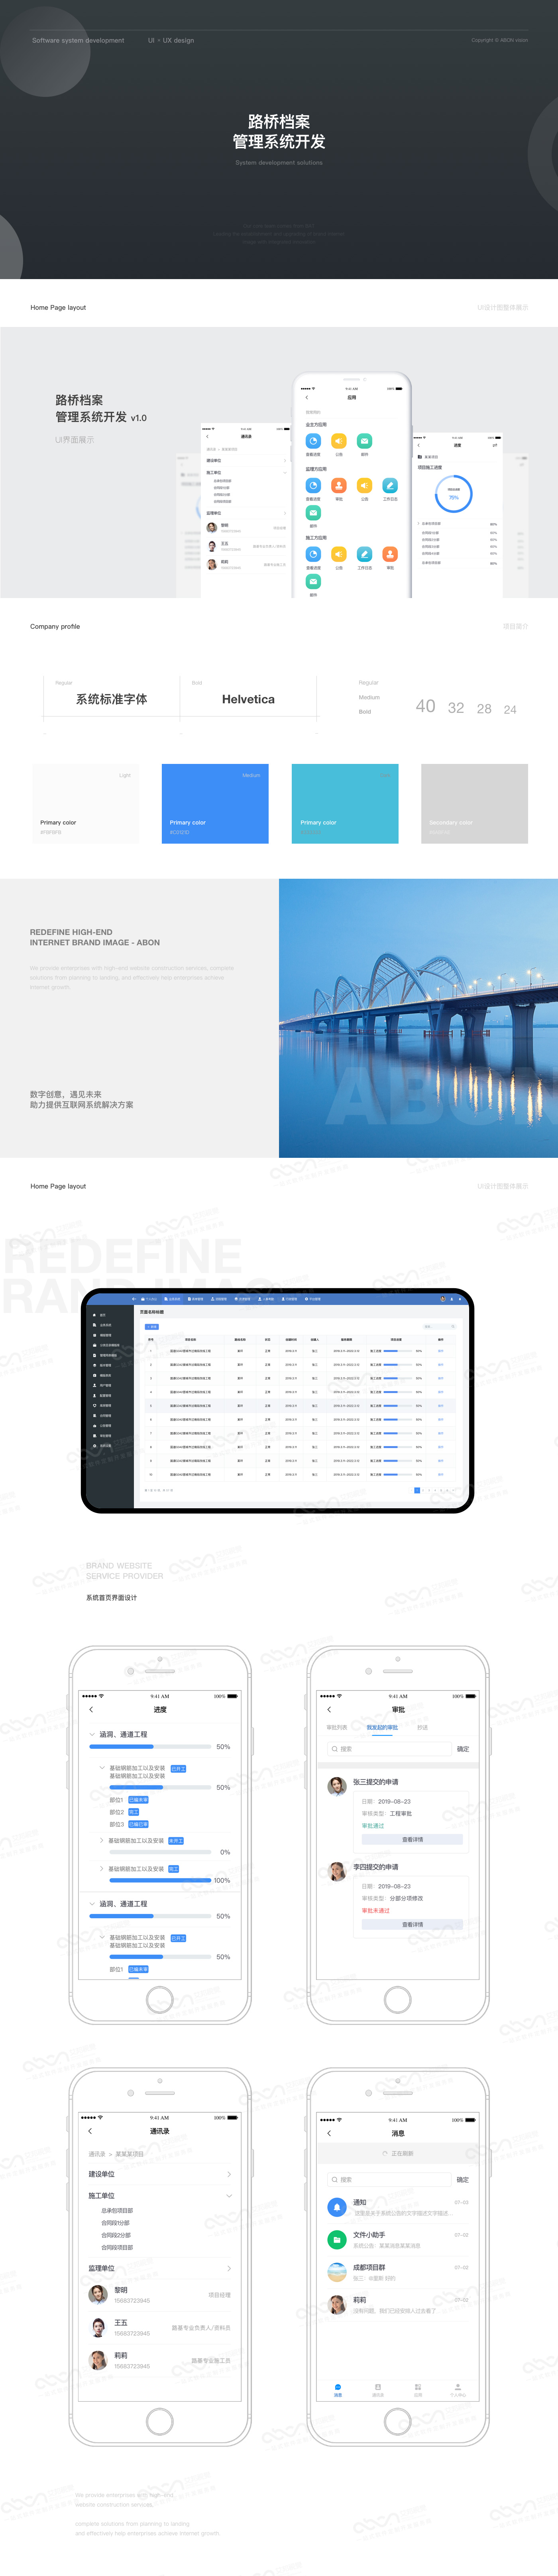 07-路桥档案管理系统开发.jpg